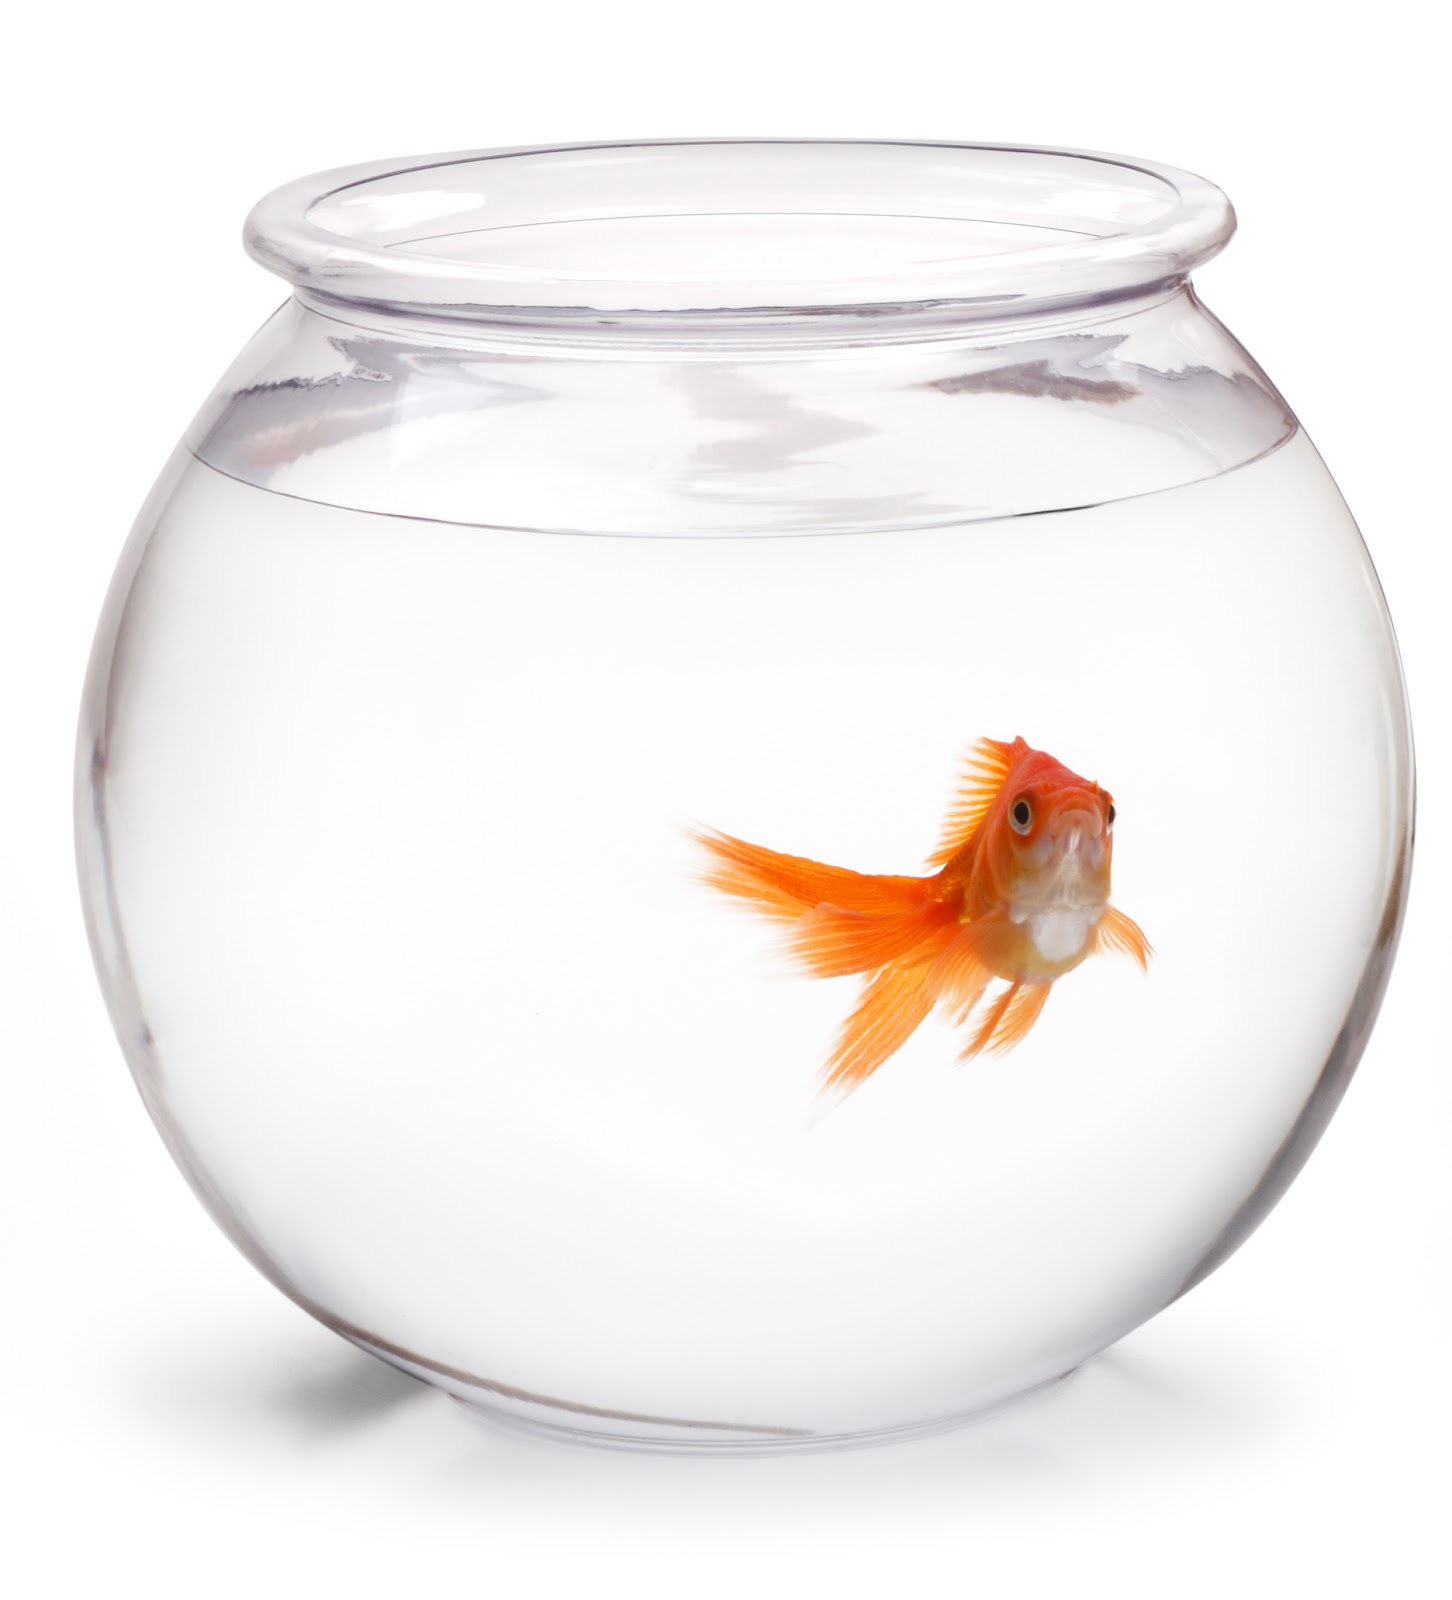 Whitebelt Zen: Fish Bowl